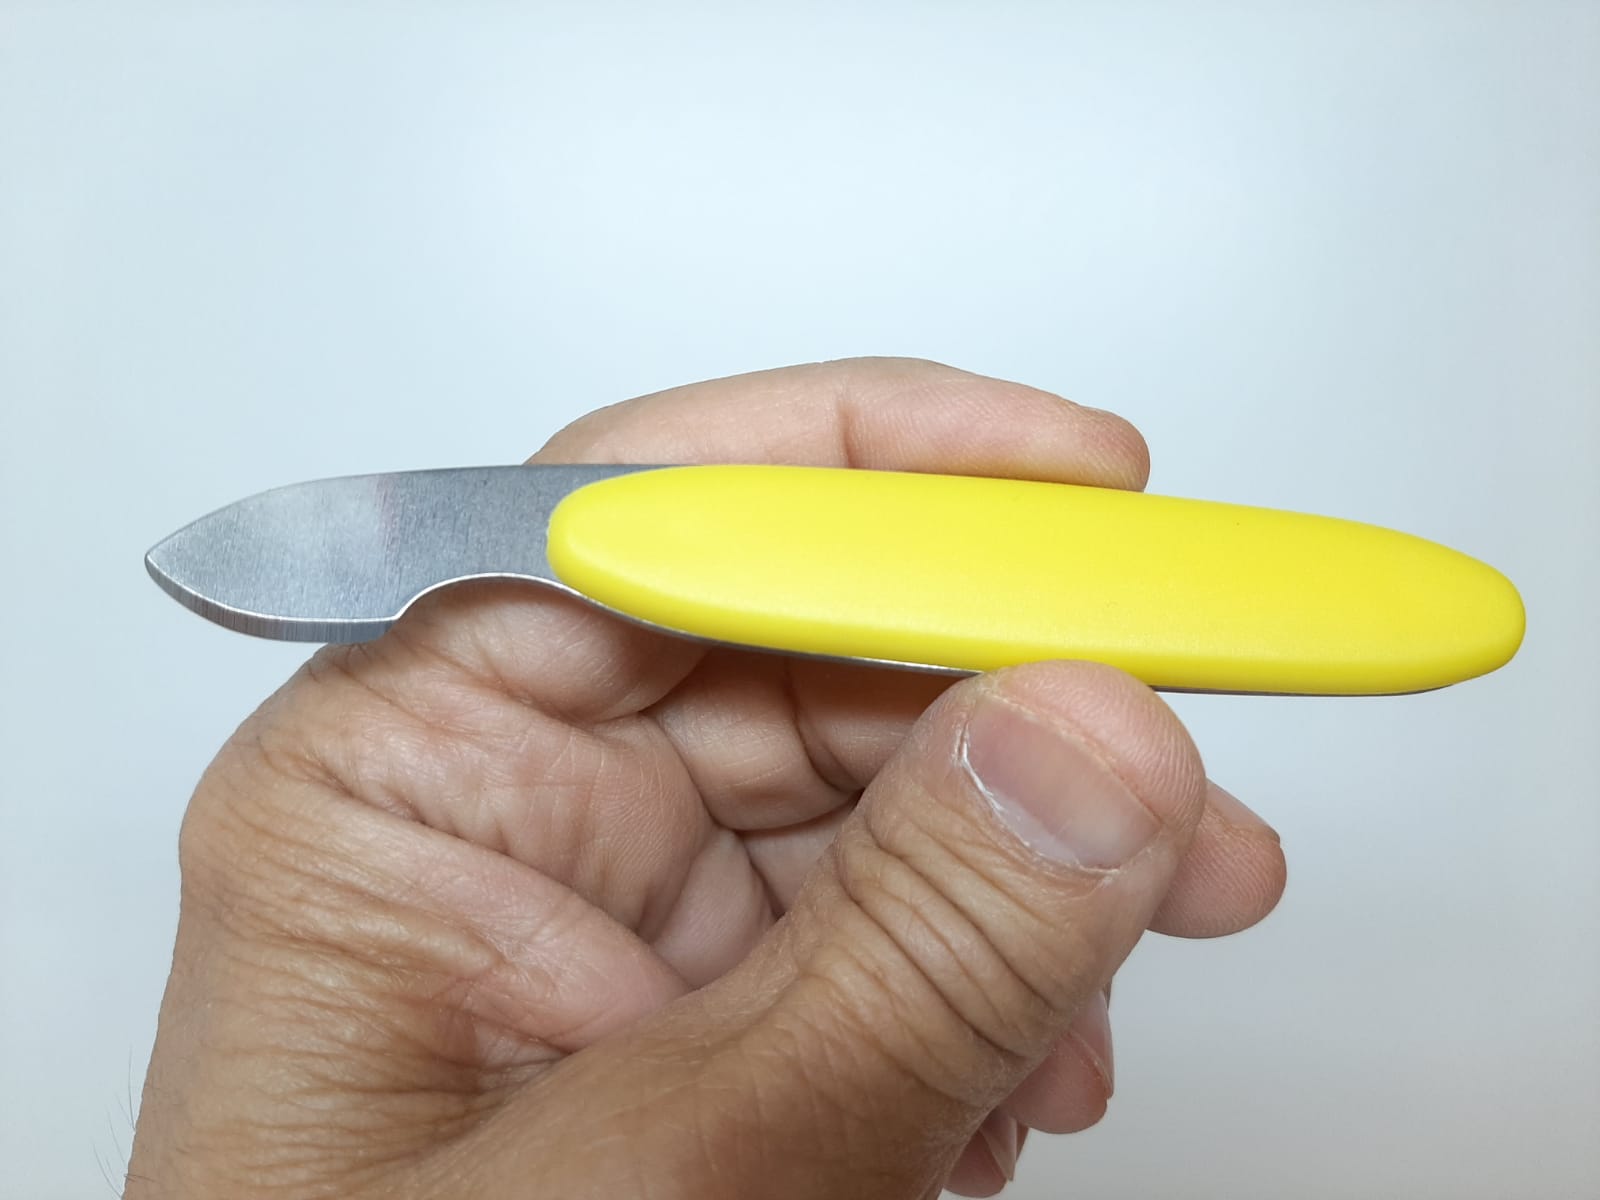 Skruvstäd + Boettöppnare Kniv (Klocka/urmakeri verktyg)